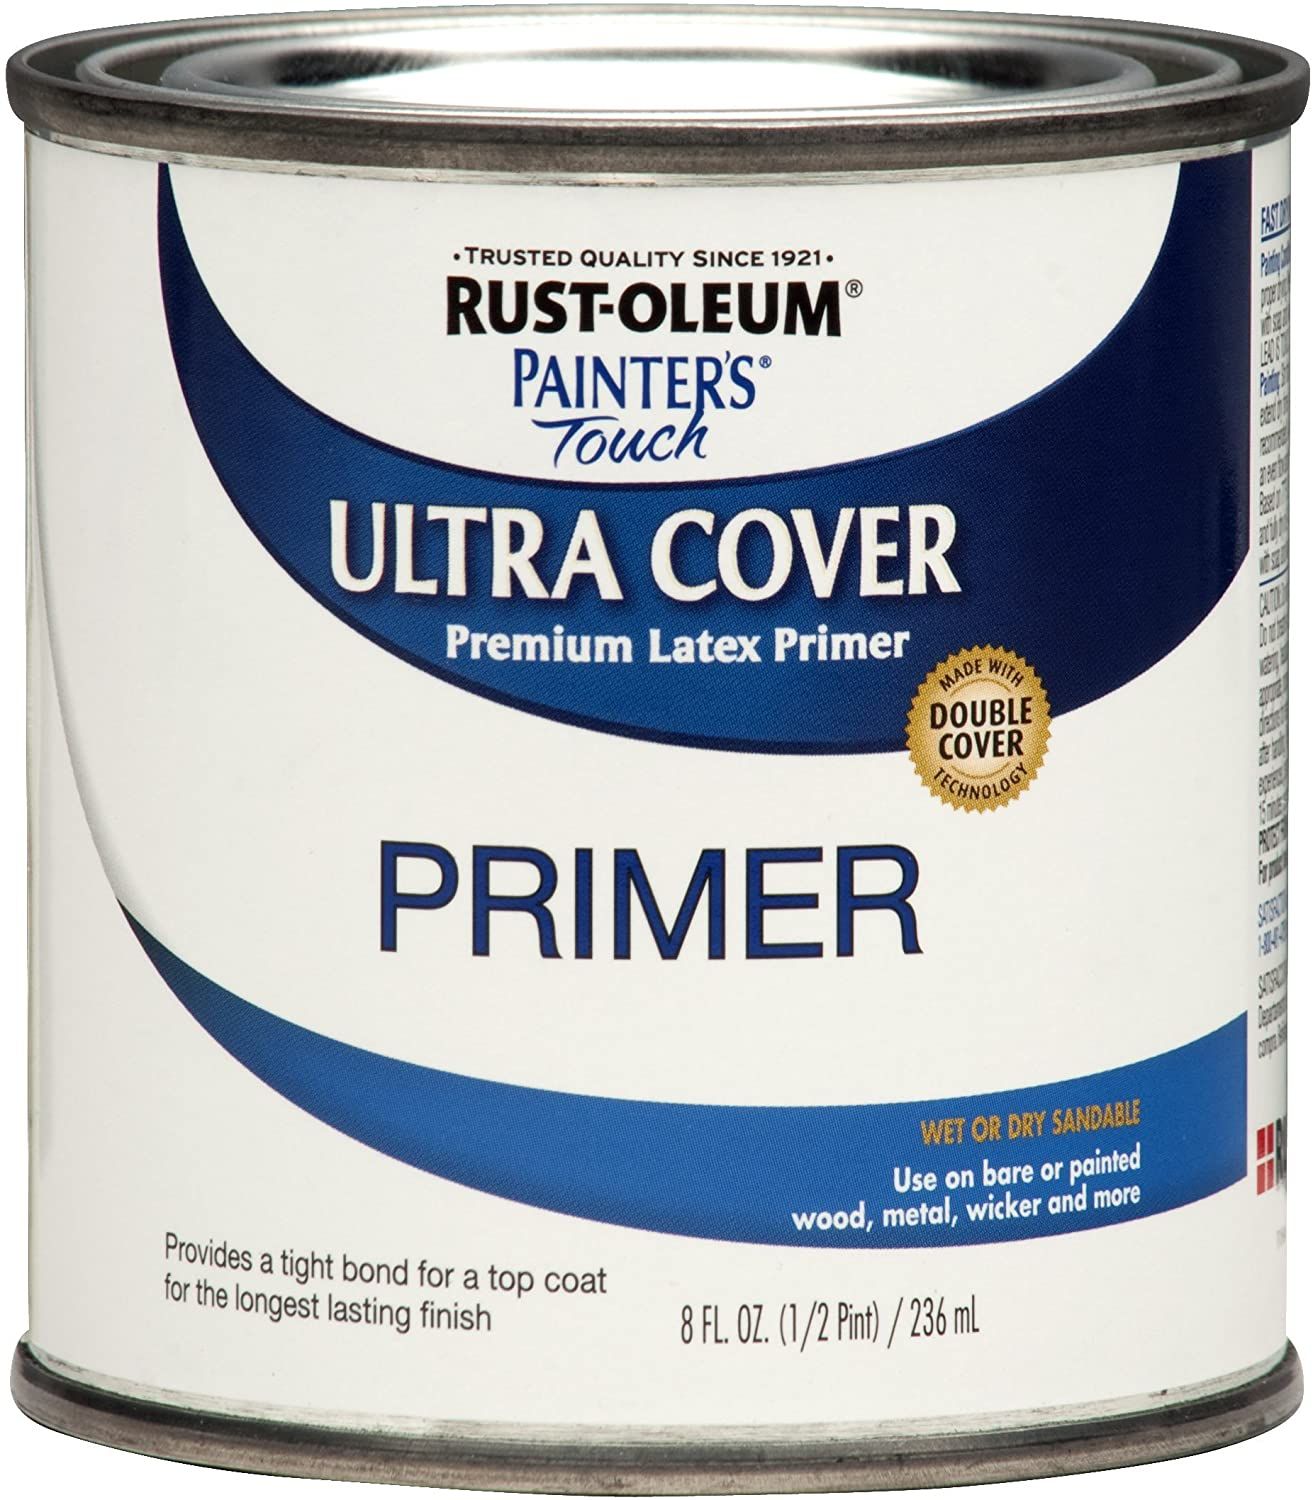 Rust-Oleum Painter’s Touch Ultra Cover Premium Latex Primer